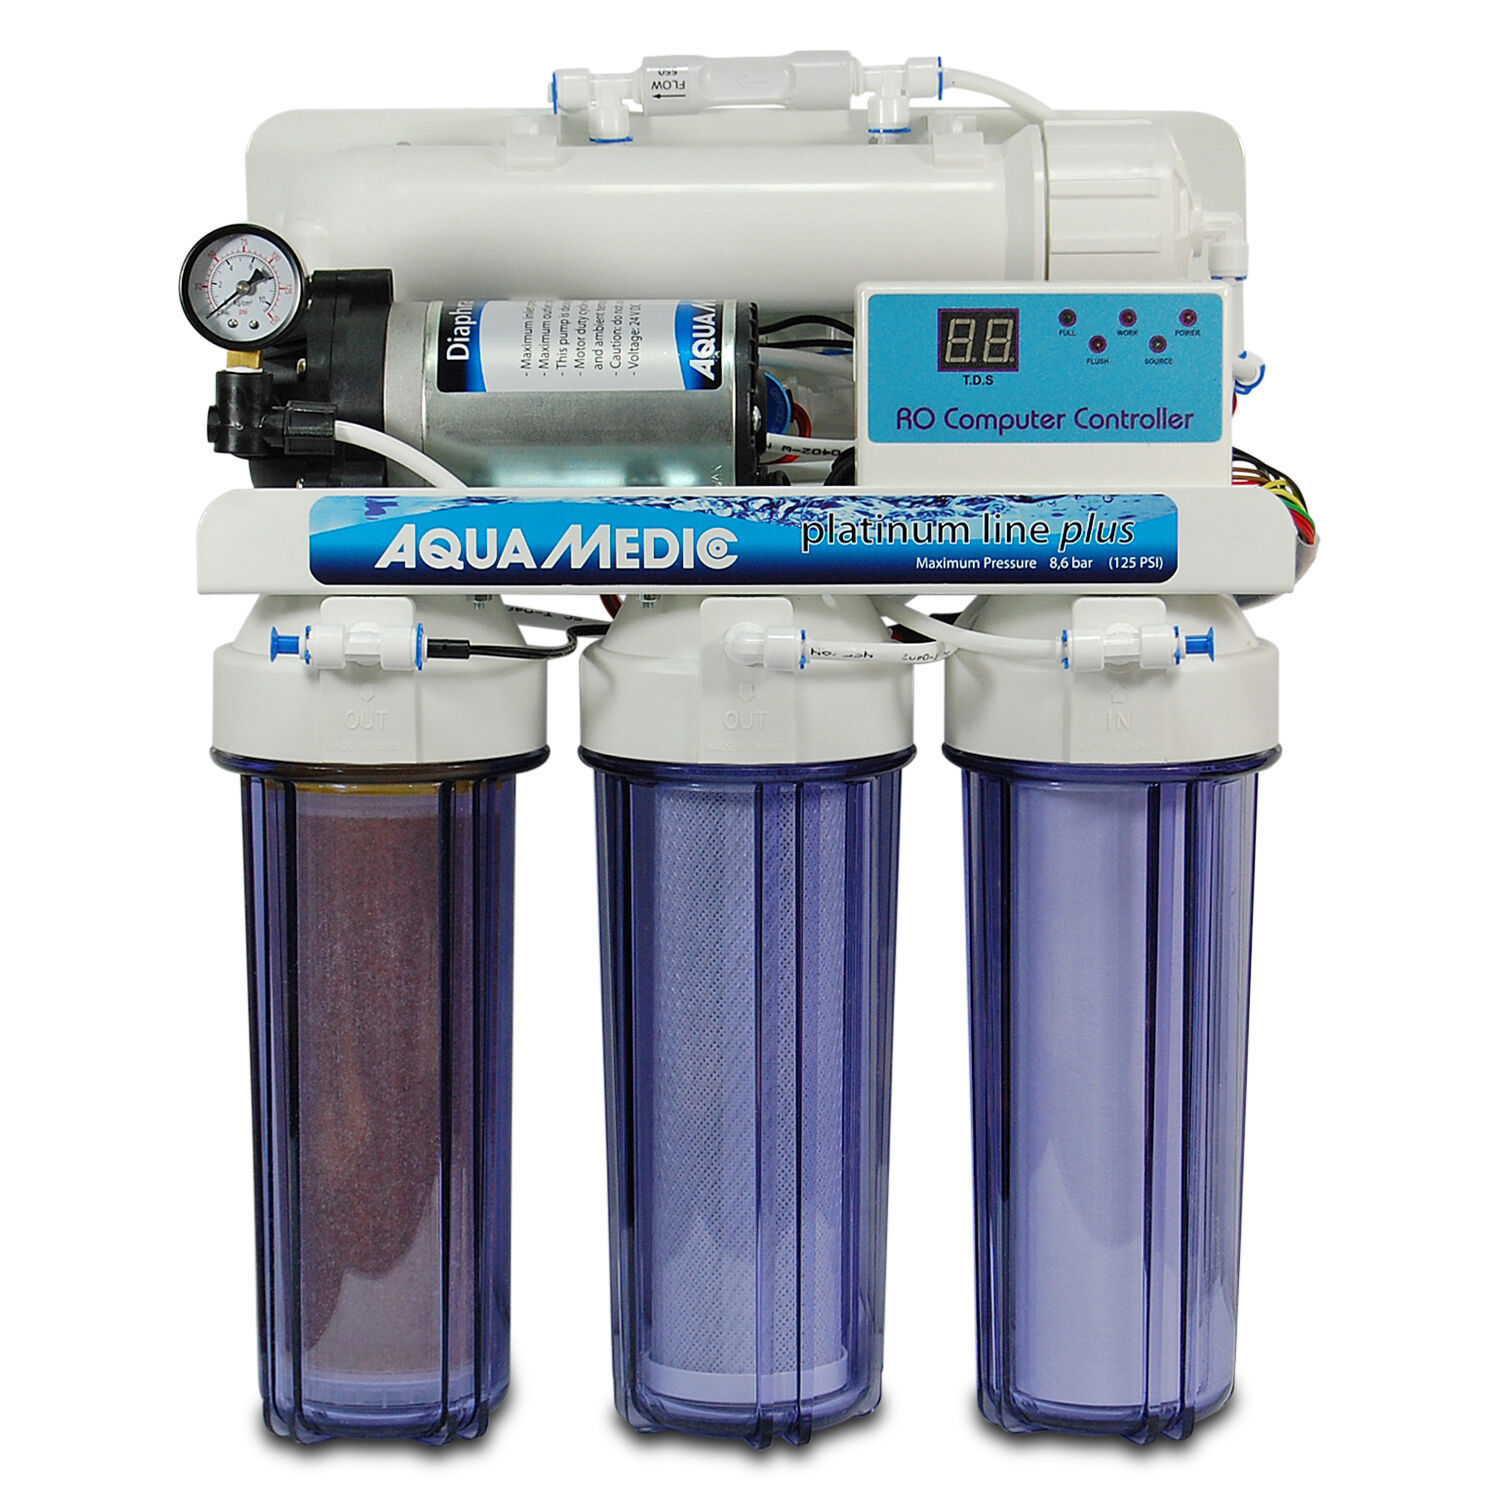 Осмос для аквариума купить. Biostar flotor Aqua medic. Фильтр обратного осмоса для аквариума. Обратный осмос для аквариума. Деионизатор воды.